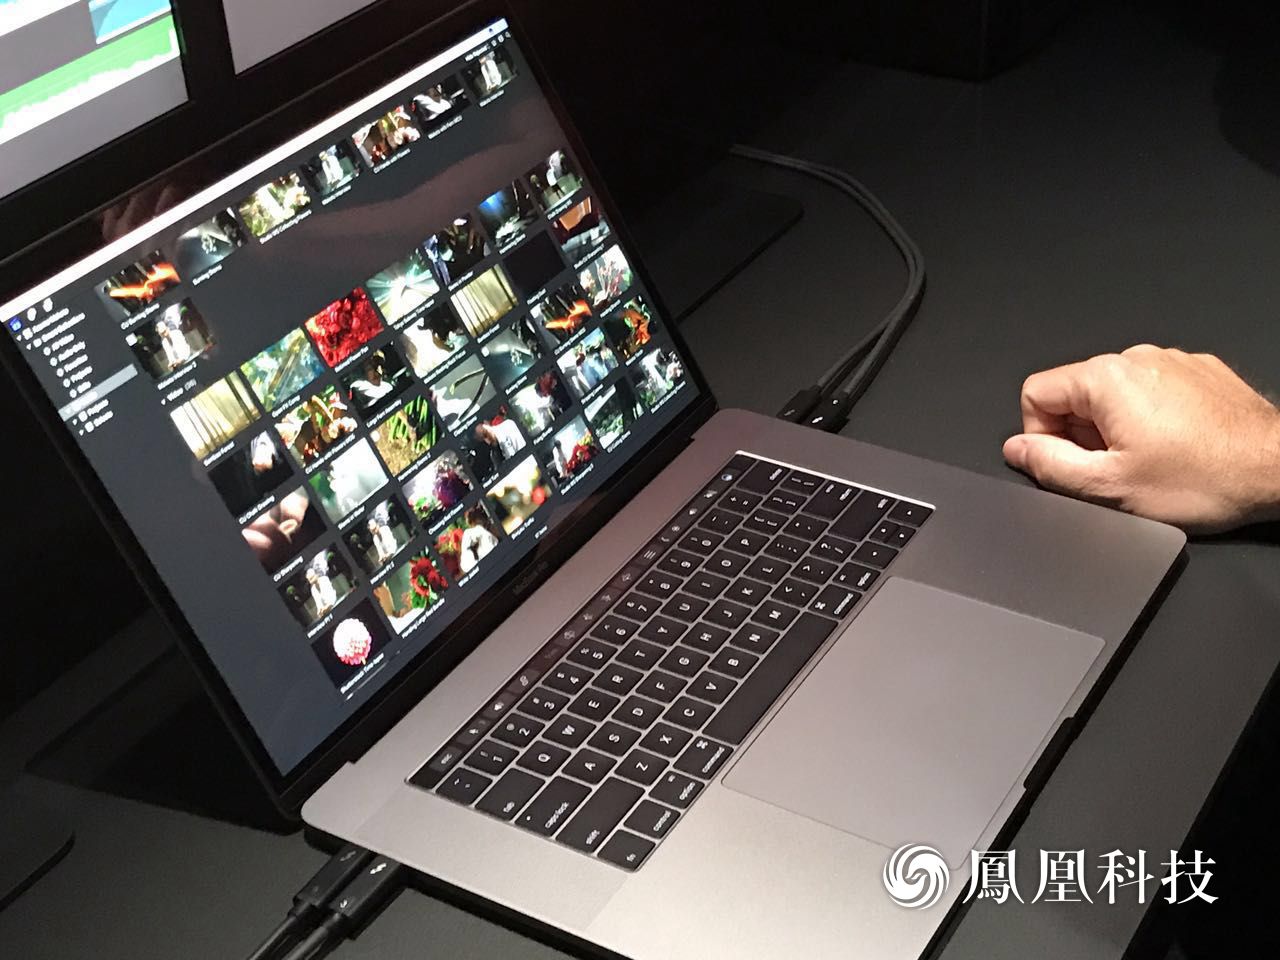 2016款MacBook Pro试玩:产品很美好 但售价偏